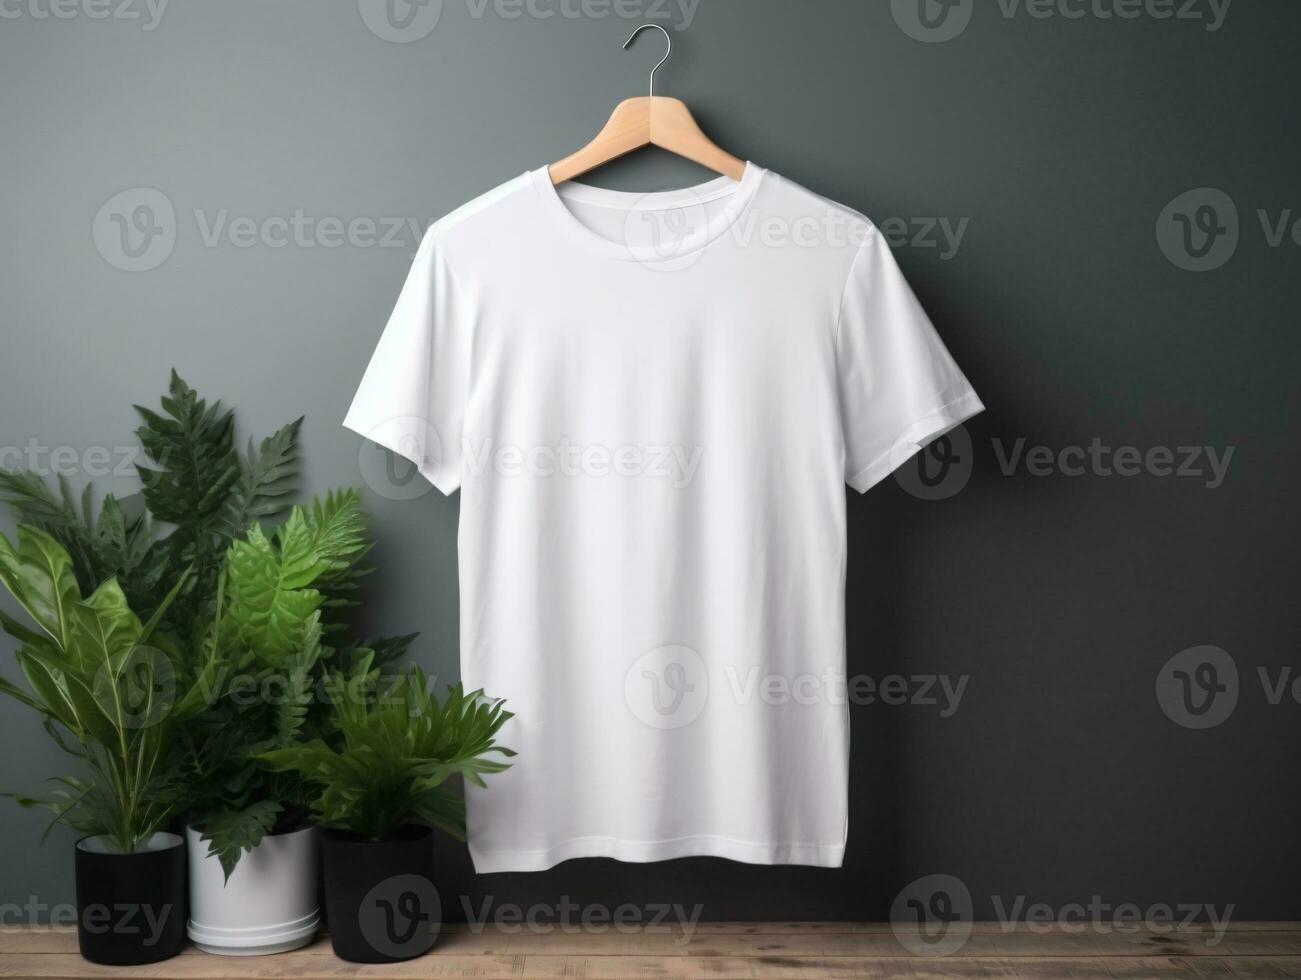 comercial blanco camiseta Bosquejo foto